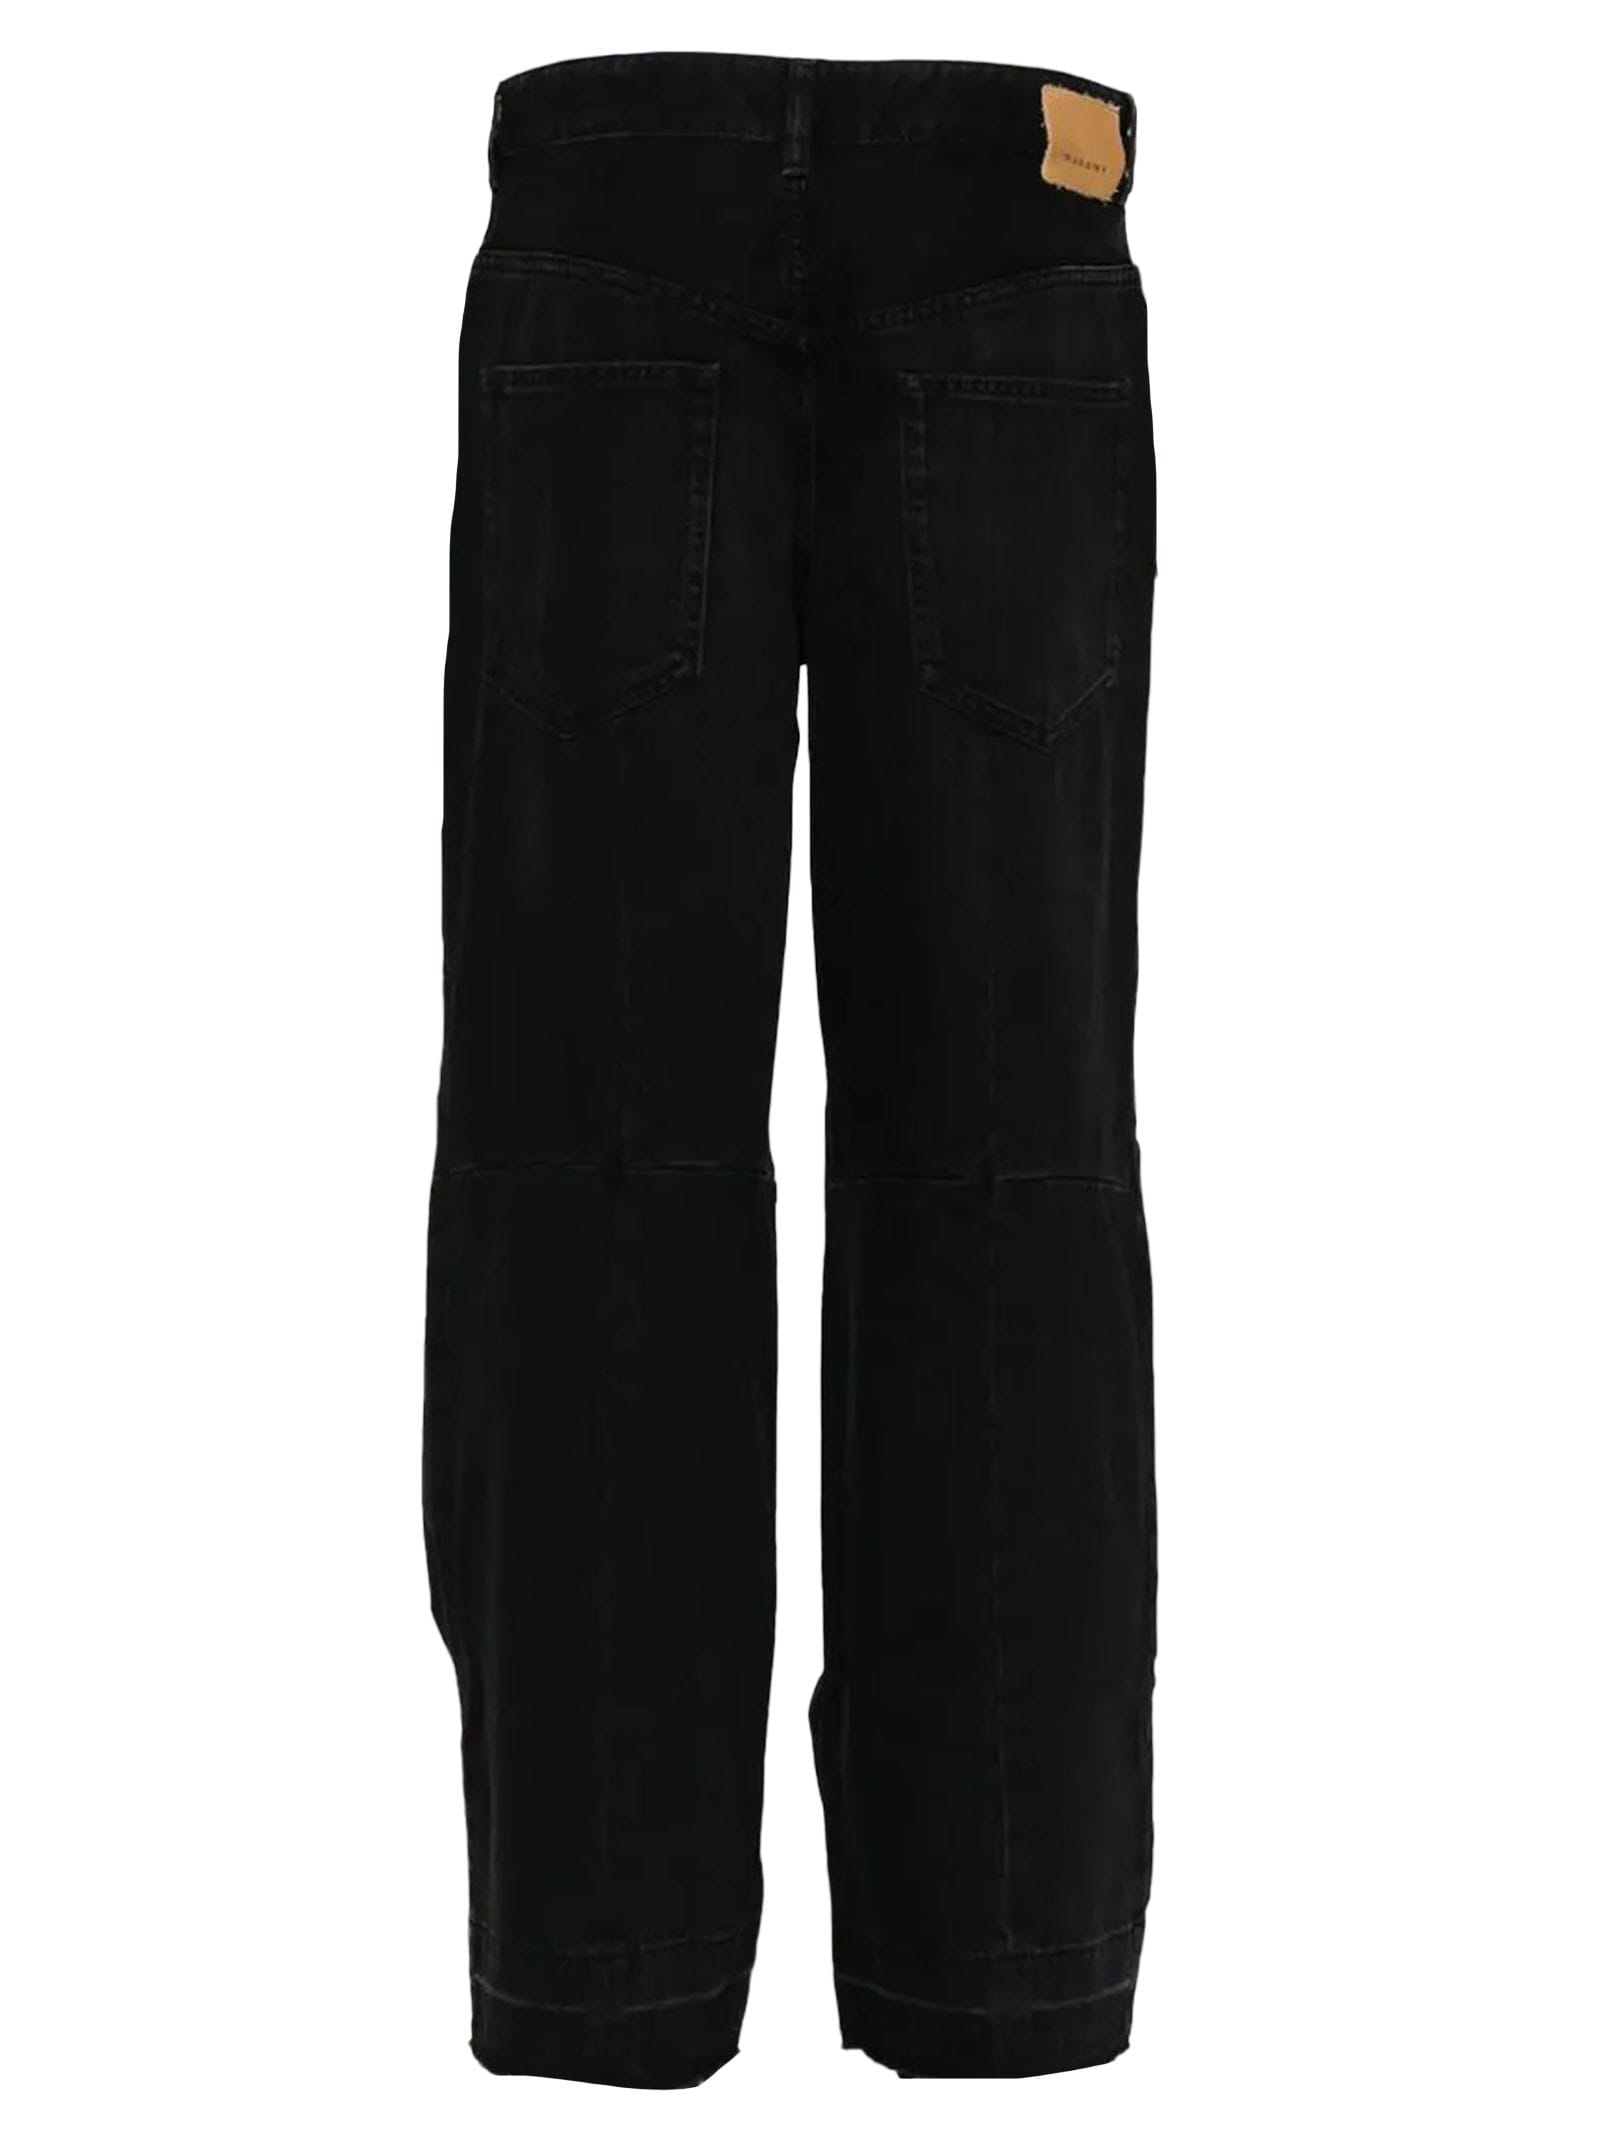 Shop Isabel Marant Black Cotton Blend Trousers